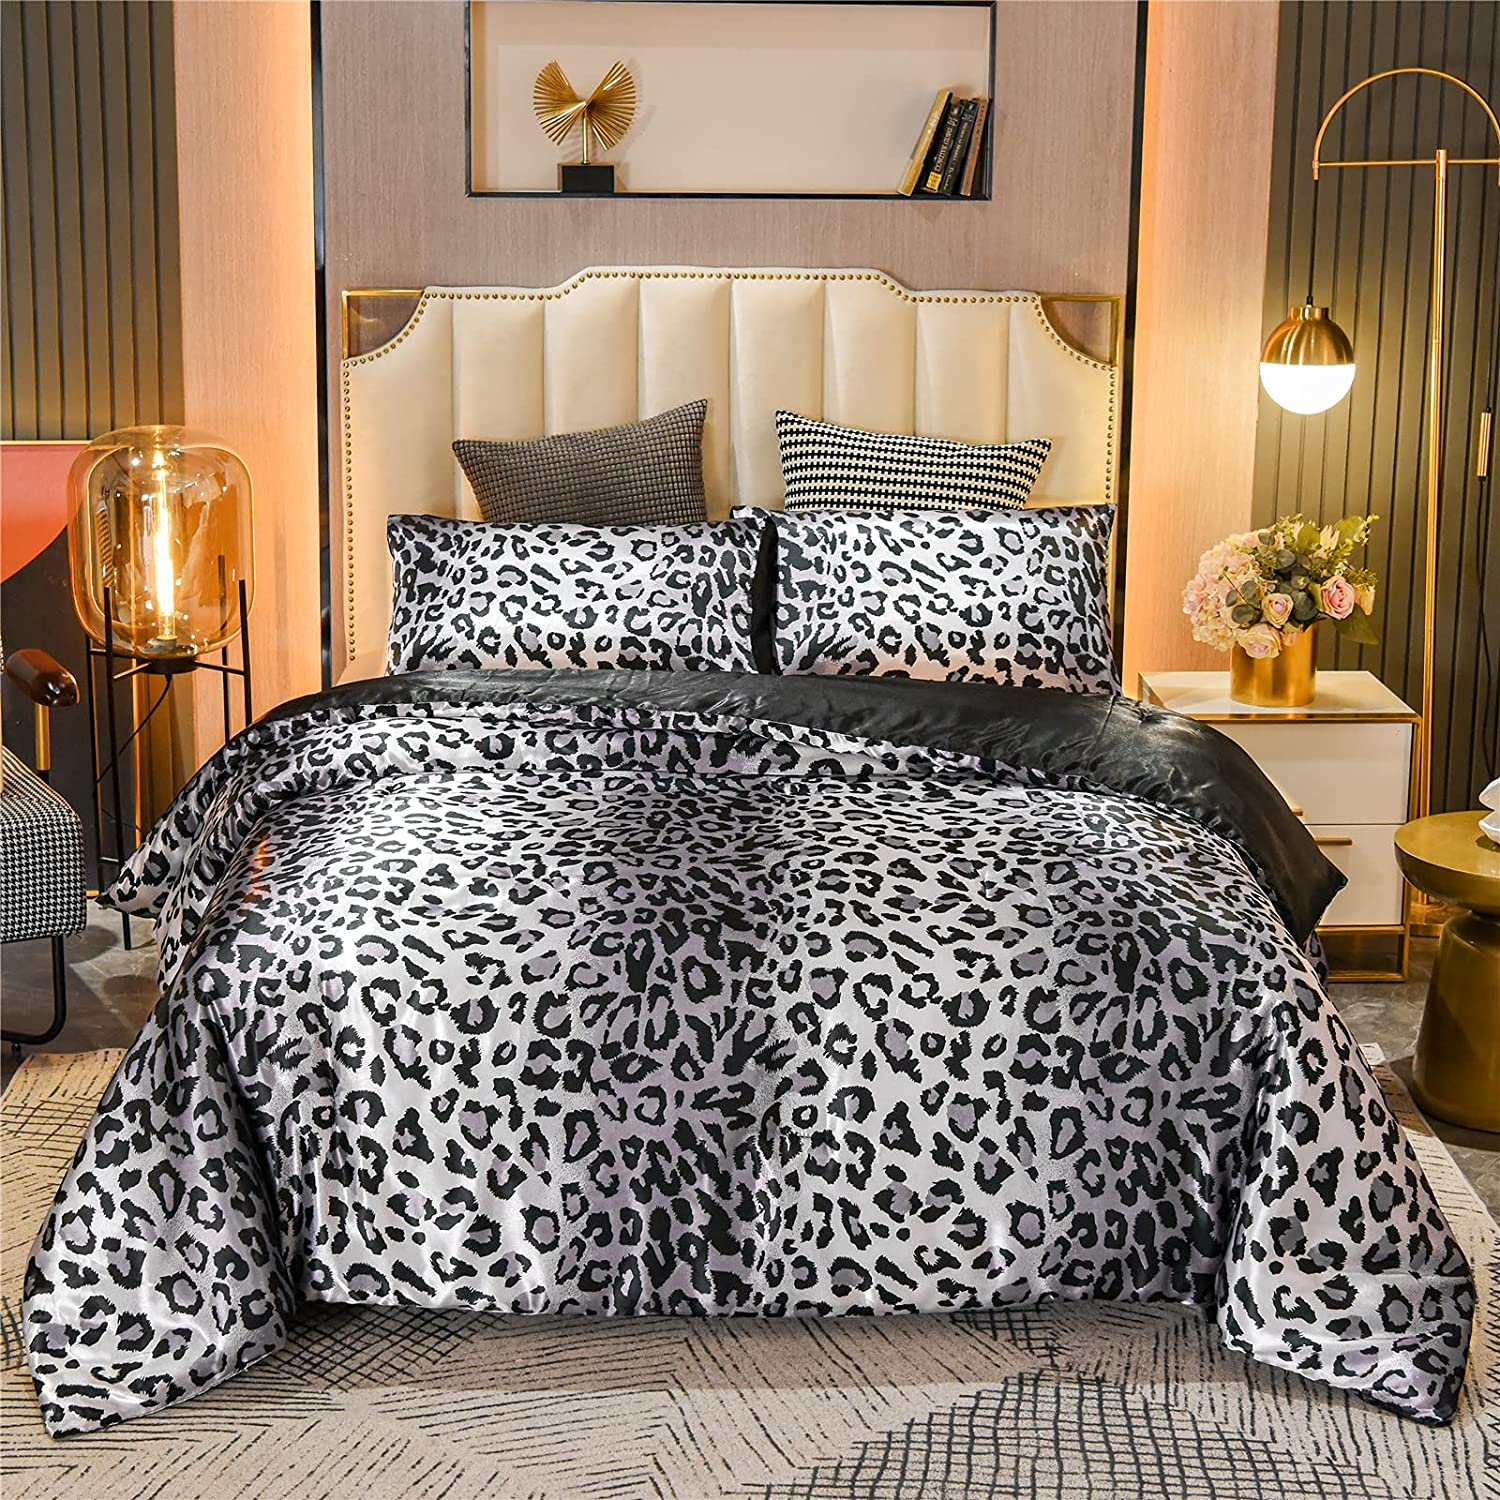 Queen Size Bedding Set Leopard Print WholeSale - Price List, Bulk